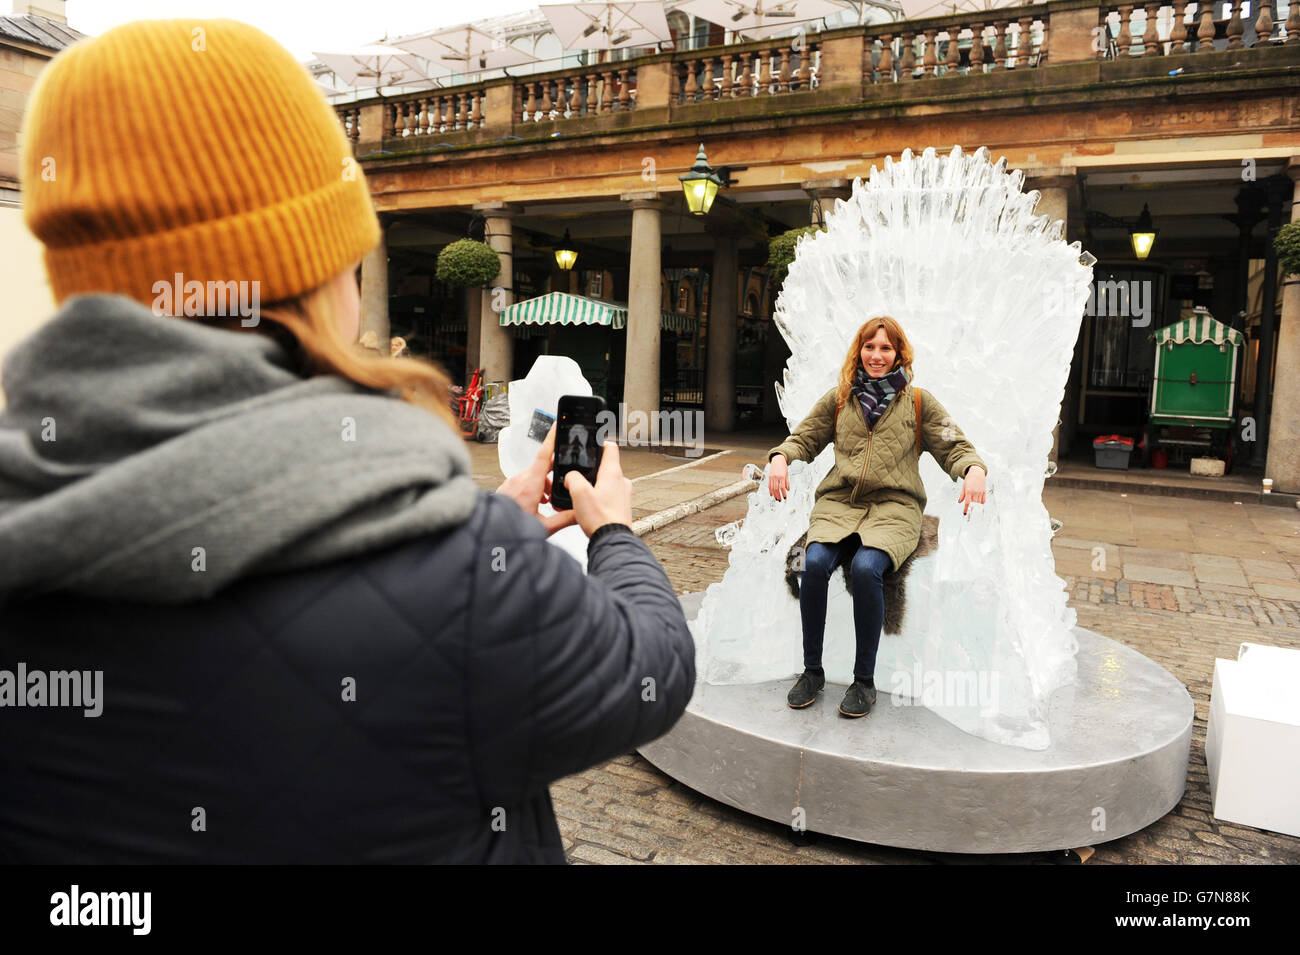 Iron Throne, scolpito nel ghiaccio e a grandezza naturale, è in mostra a Covent Garden, Londra, per celebrare il lancio del Trono di Spade: La quarta stagione completa. Foto Stock